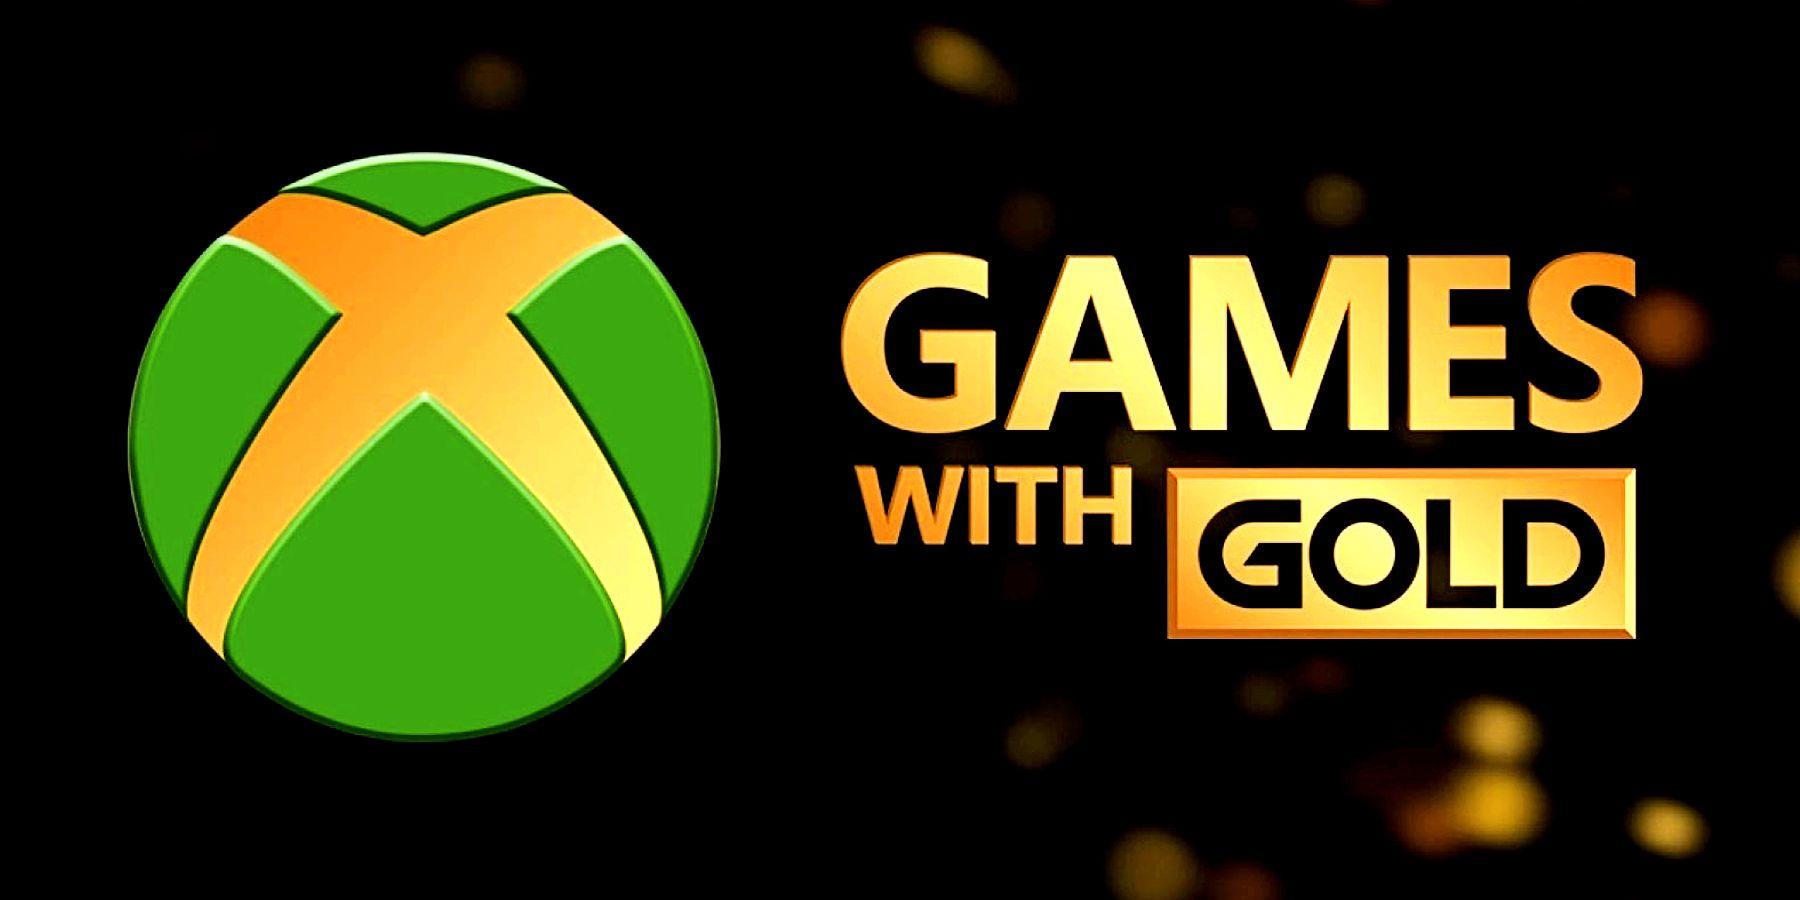 פורסמו המשחקים שיגיעו חינם במסגרת מנוי ה-Xbox Live Gold לחודש אפריל (4) - EXON - גיימינג ותוכנות